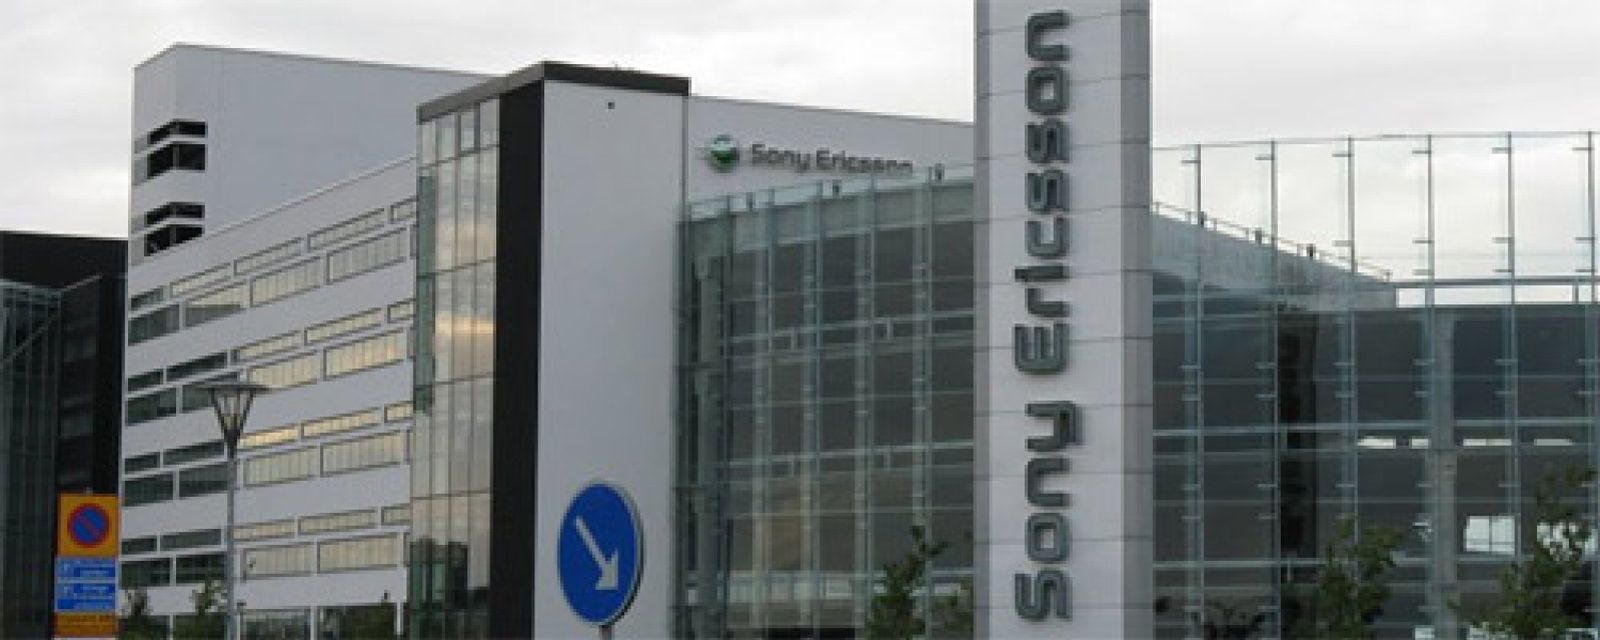 Foto: Sony finiquita su 'joint venture' con Ericsson y regresa a Japón